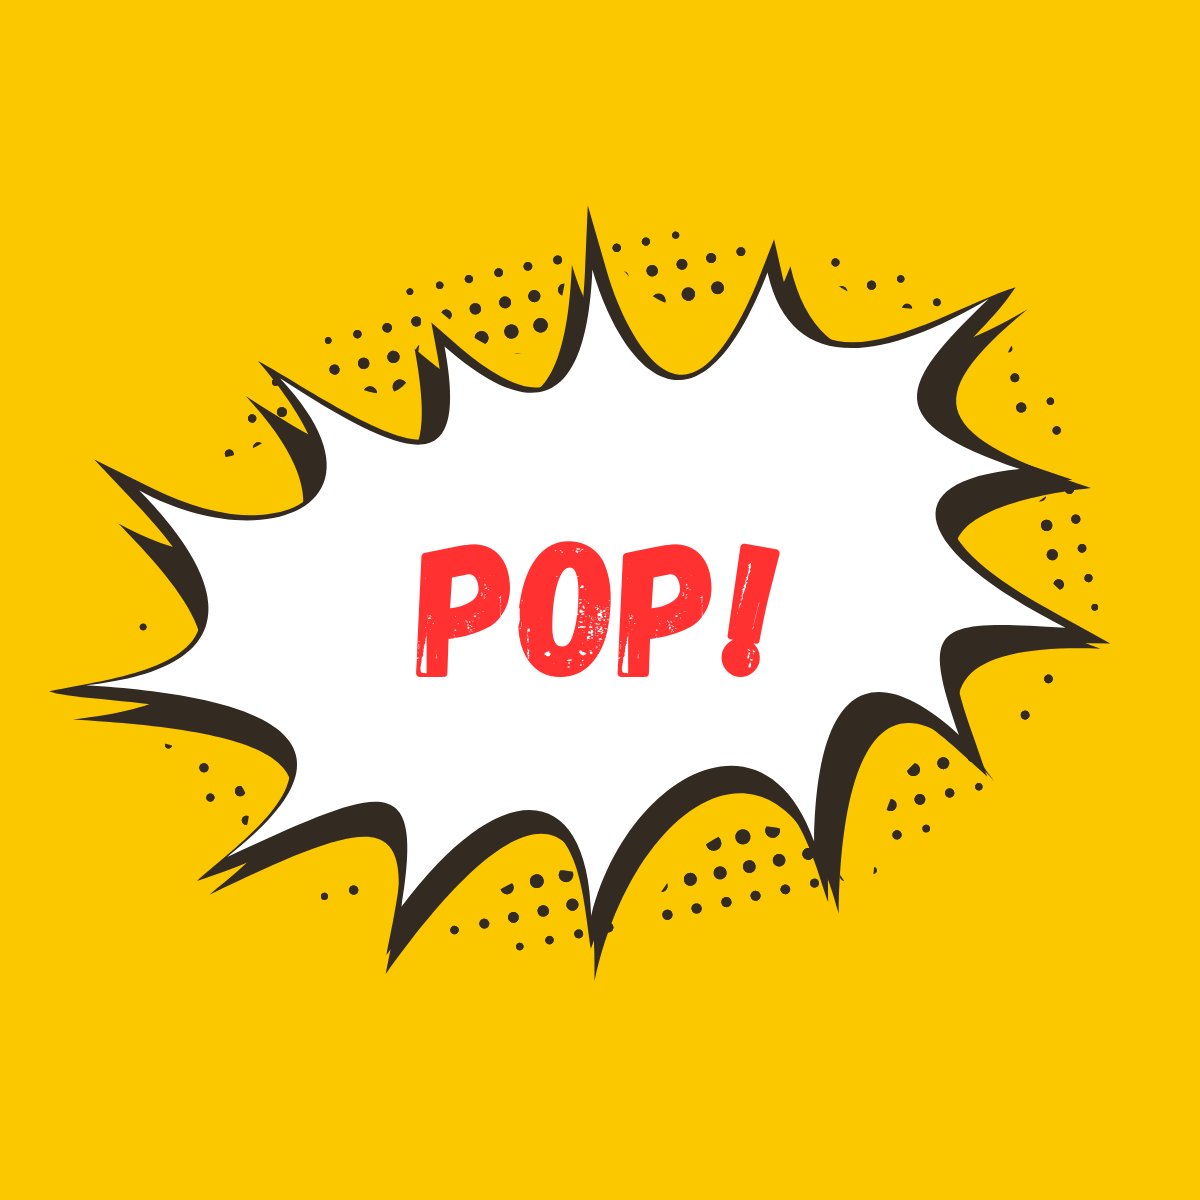 Pop! ‑ Social Proof Popups